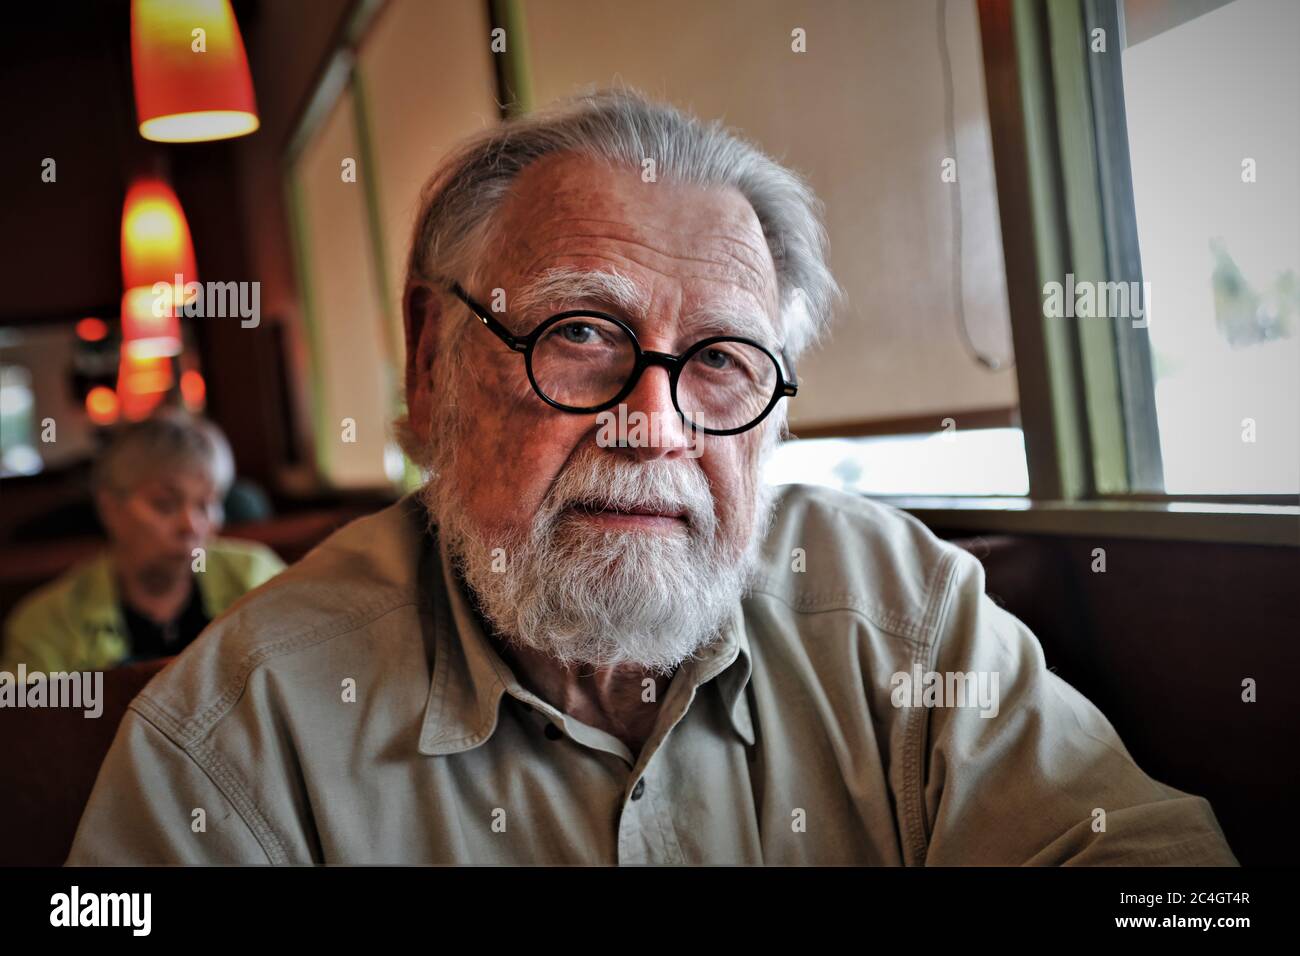 homme âgé avec des lunettes une barbe et un questionnement regarder le photographe en plein visage et cheveux gris Banque D'Images